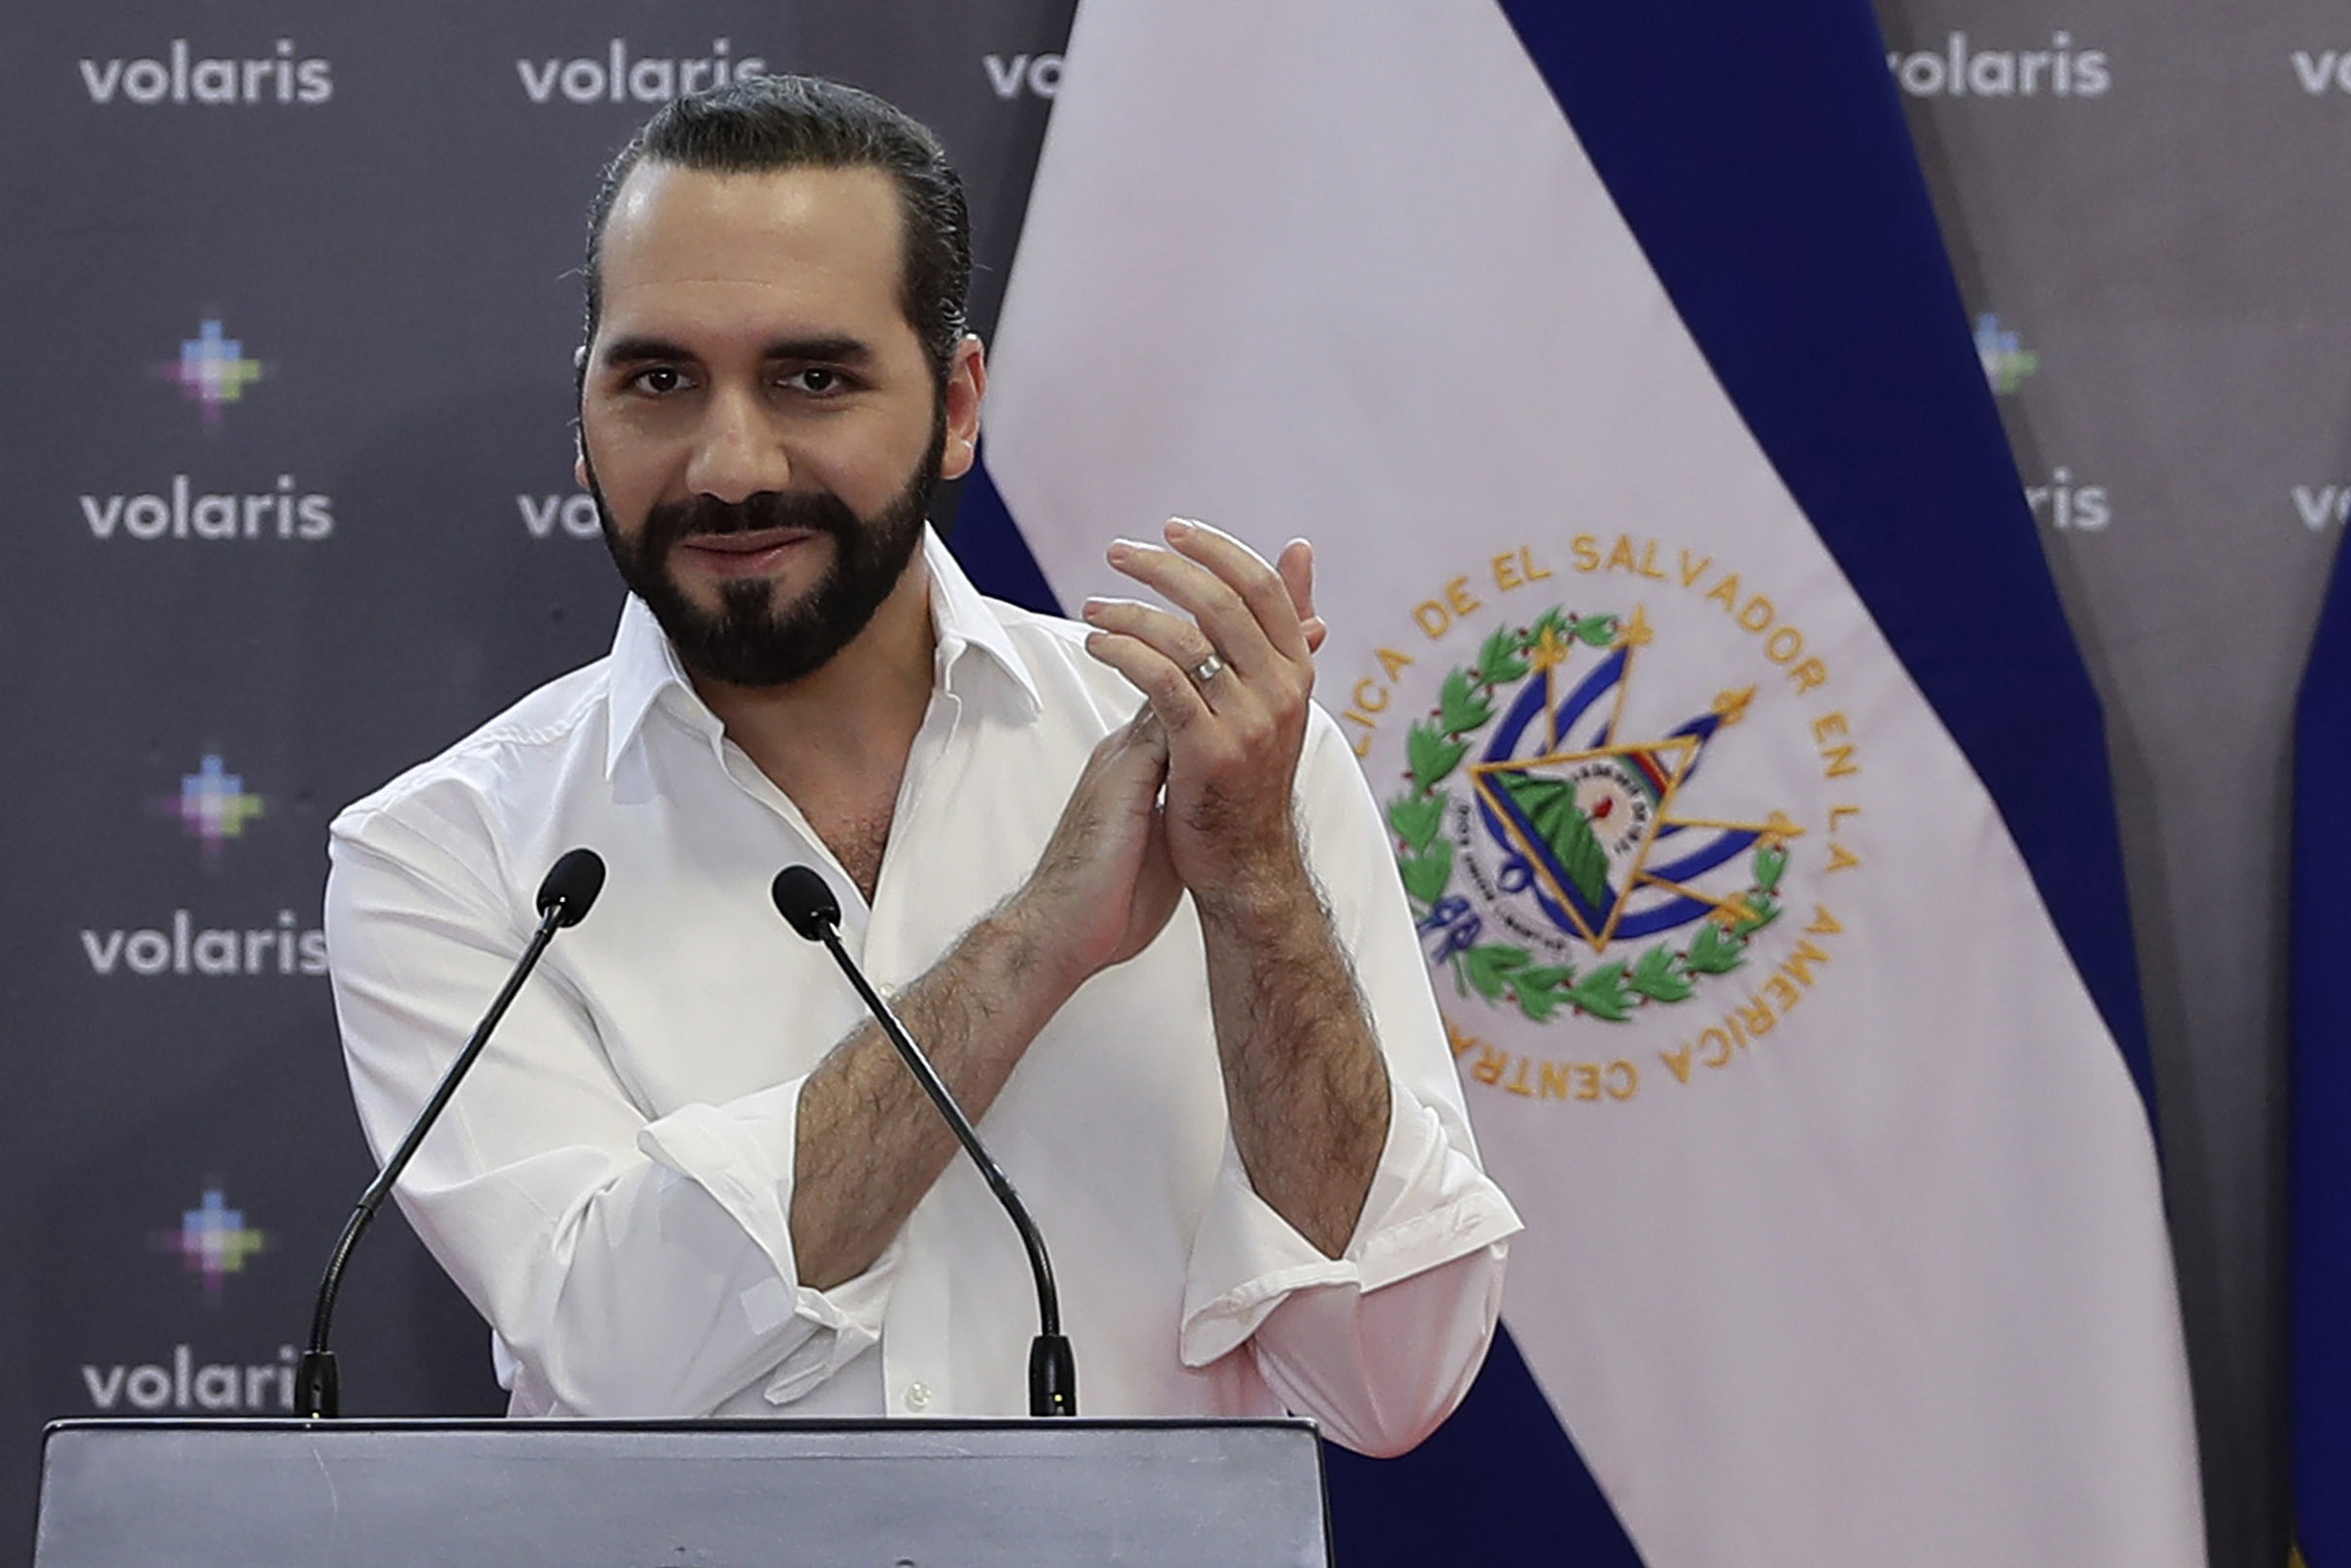 El presidente de El Salvador, Nayib Bukele, aplaude durante la inauguración de las operaciones de Volaris en su país. (Foto Prensa Libre: EFE)